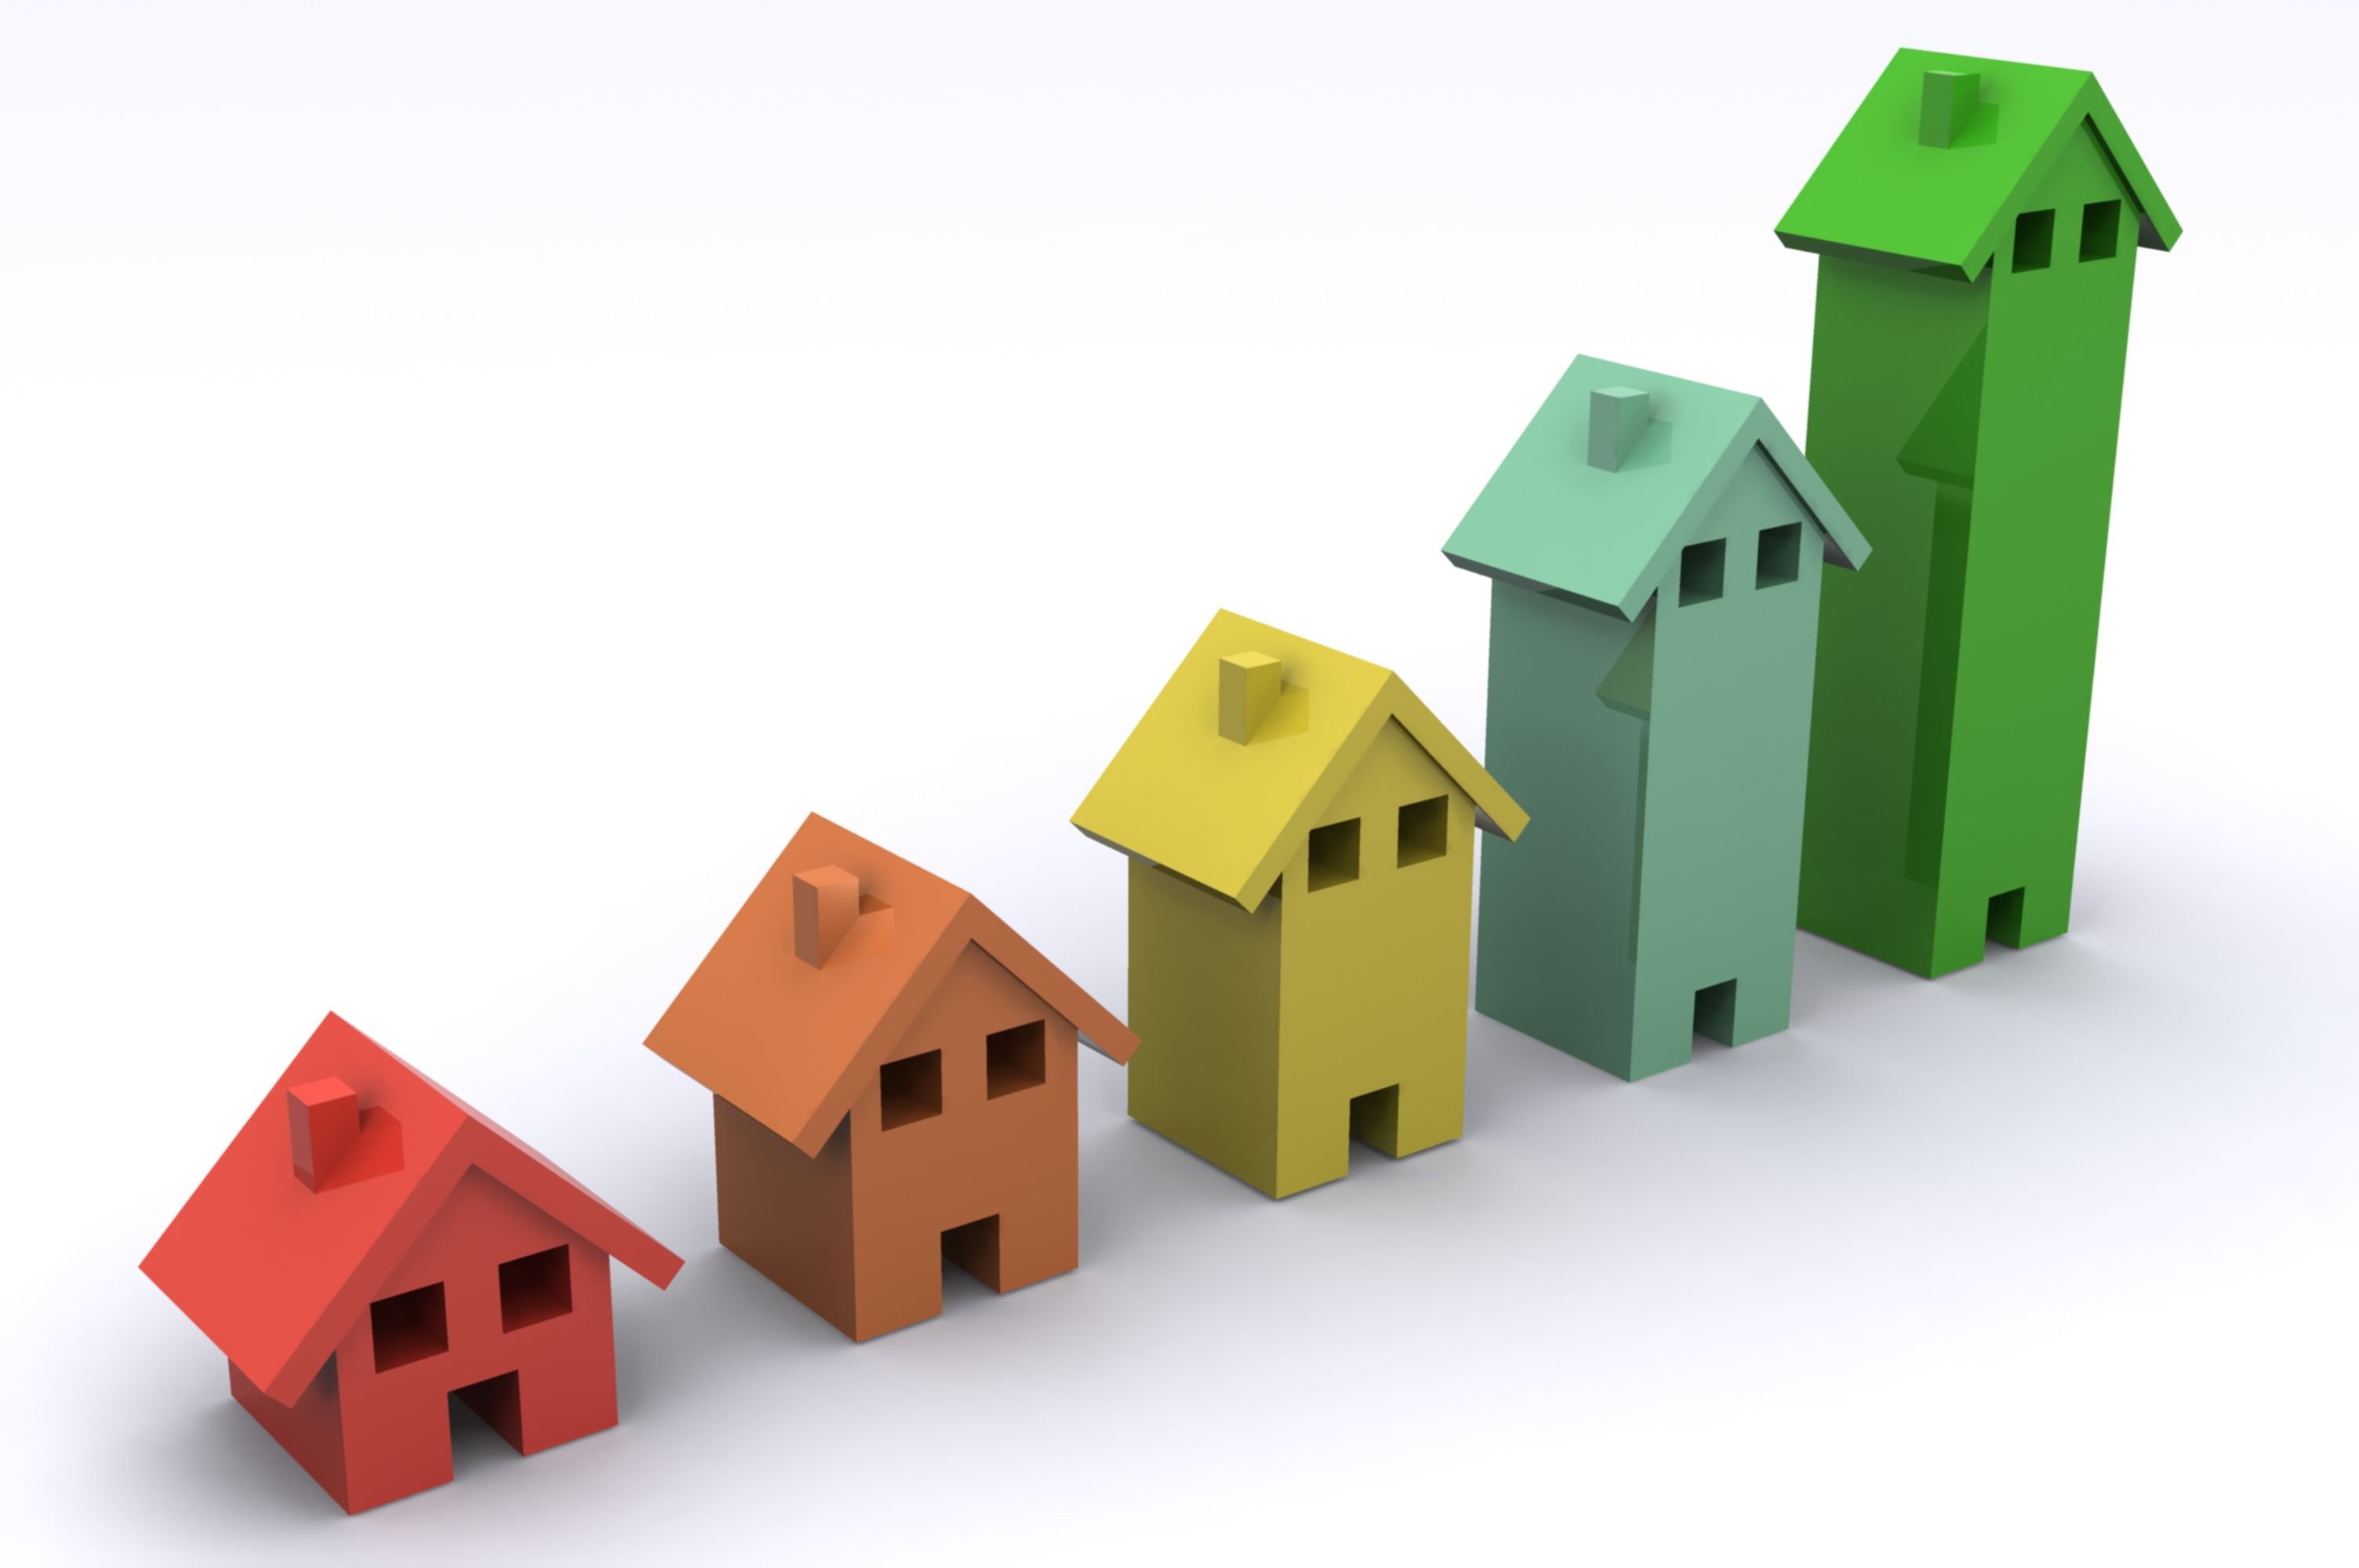 Швеция лидирует по темпам роста цен на жилье в Европе в 2015 году 